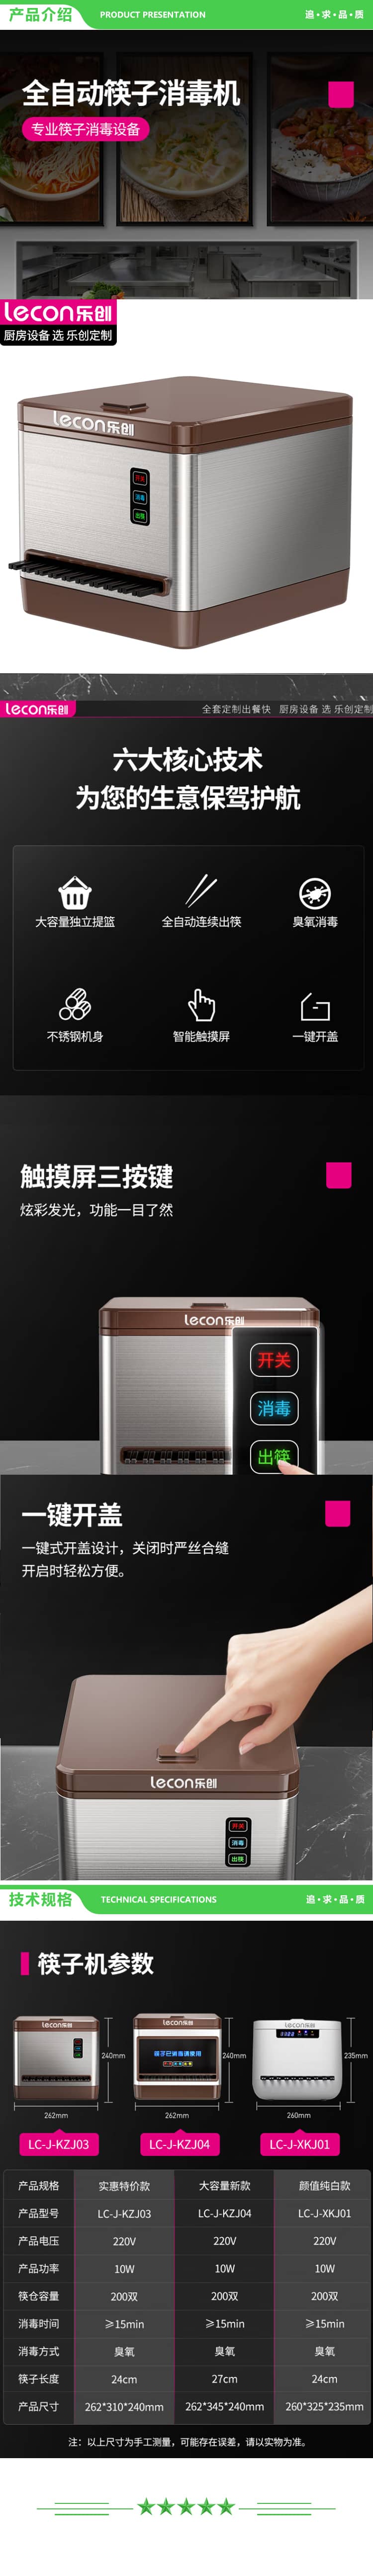 乐创 lecon LC-J-KZJ03 筷子消毒机商用 全自动餐厅微电脑智能筷子机器消毒盒 2.jpg